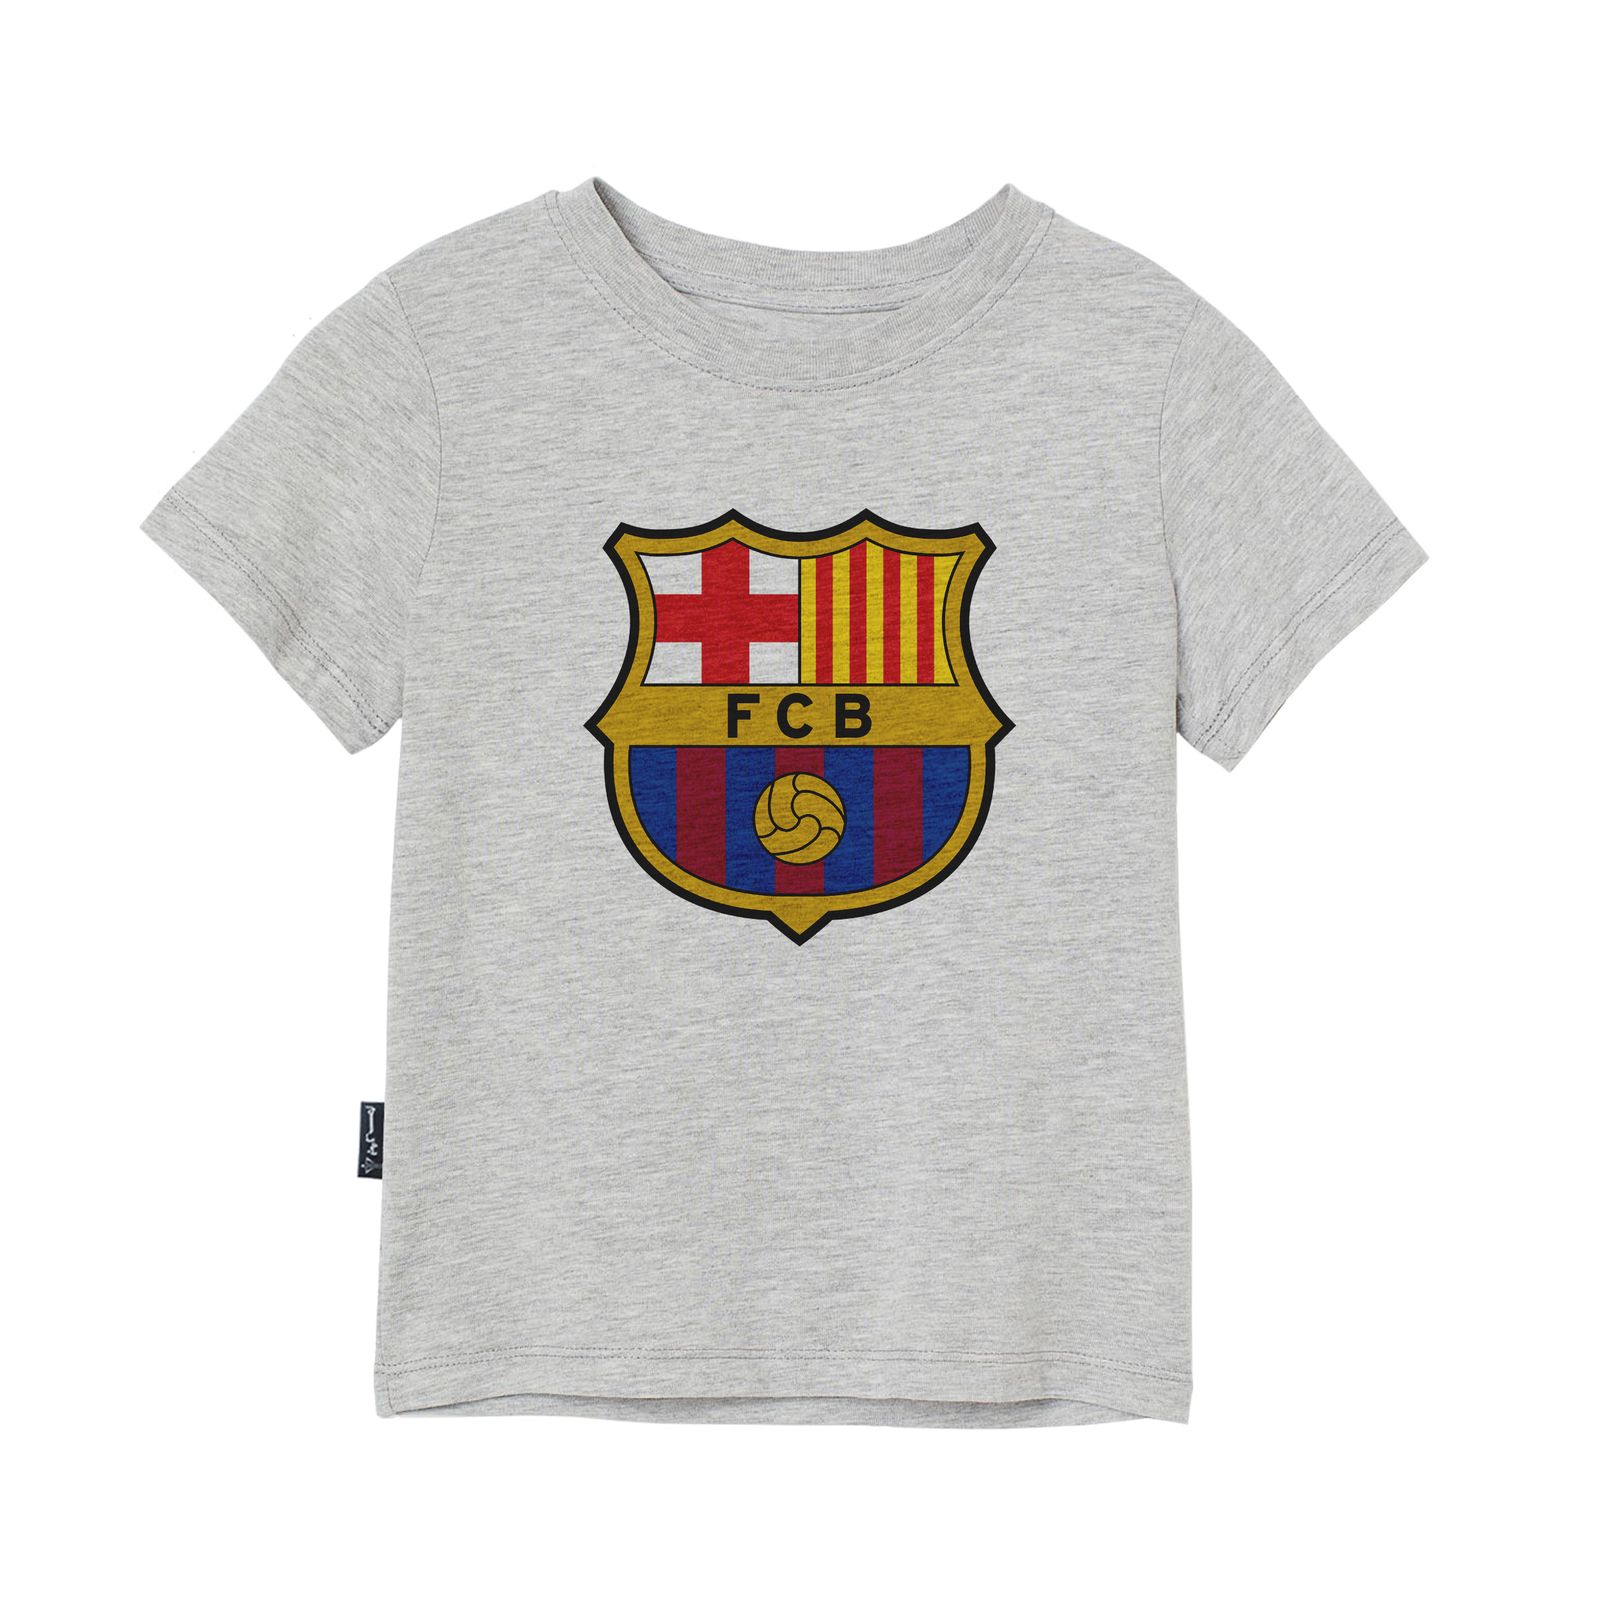 تی شرت آستین کوتاه دخترانه به رسم مدل بارسلونا کد 1113 -  - 1